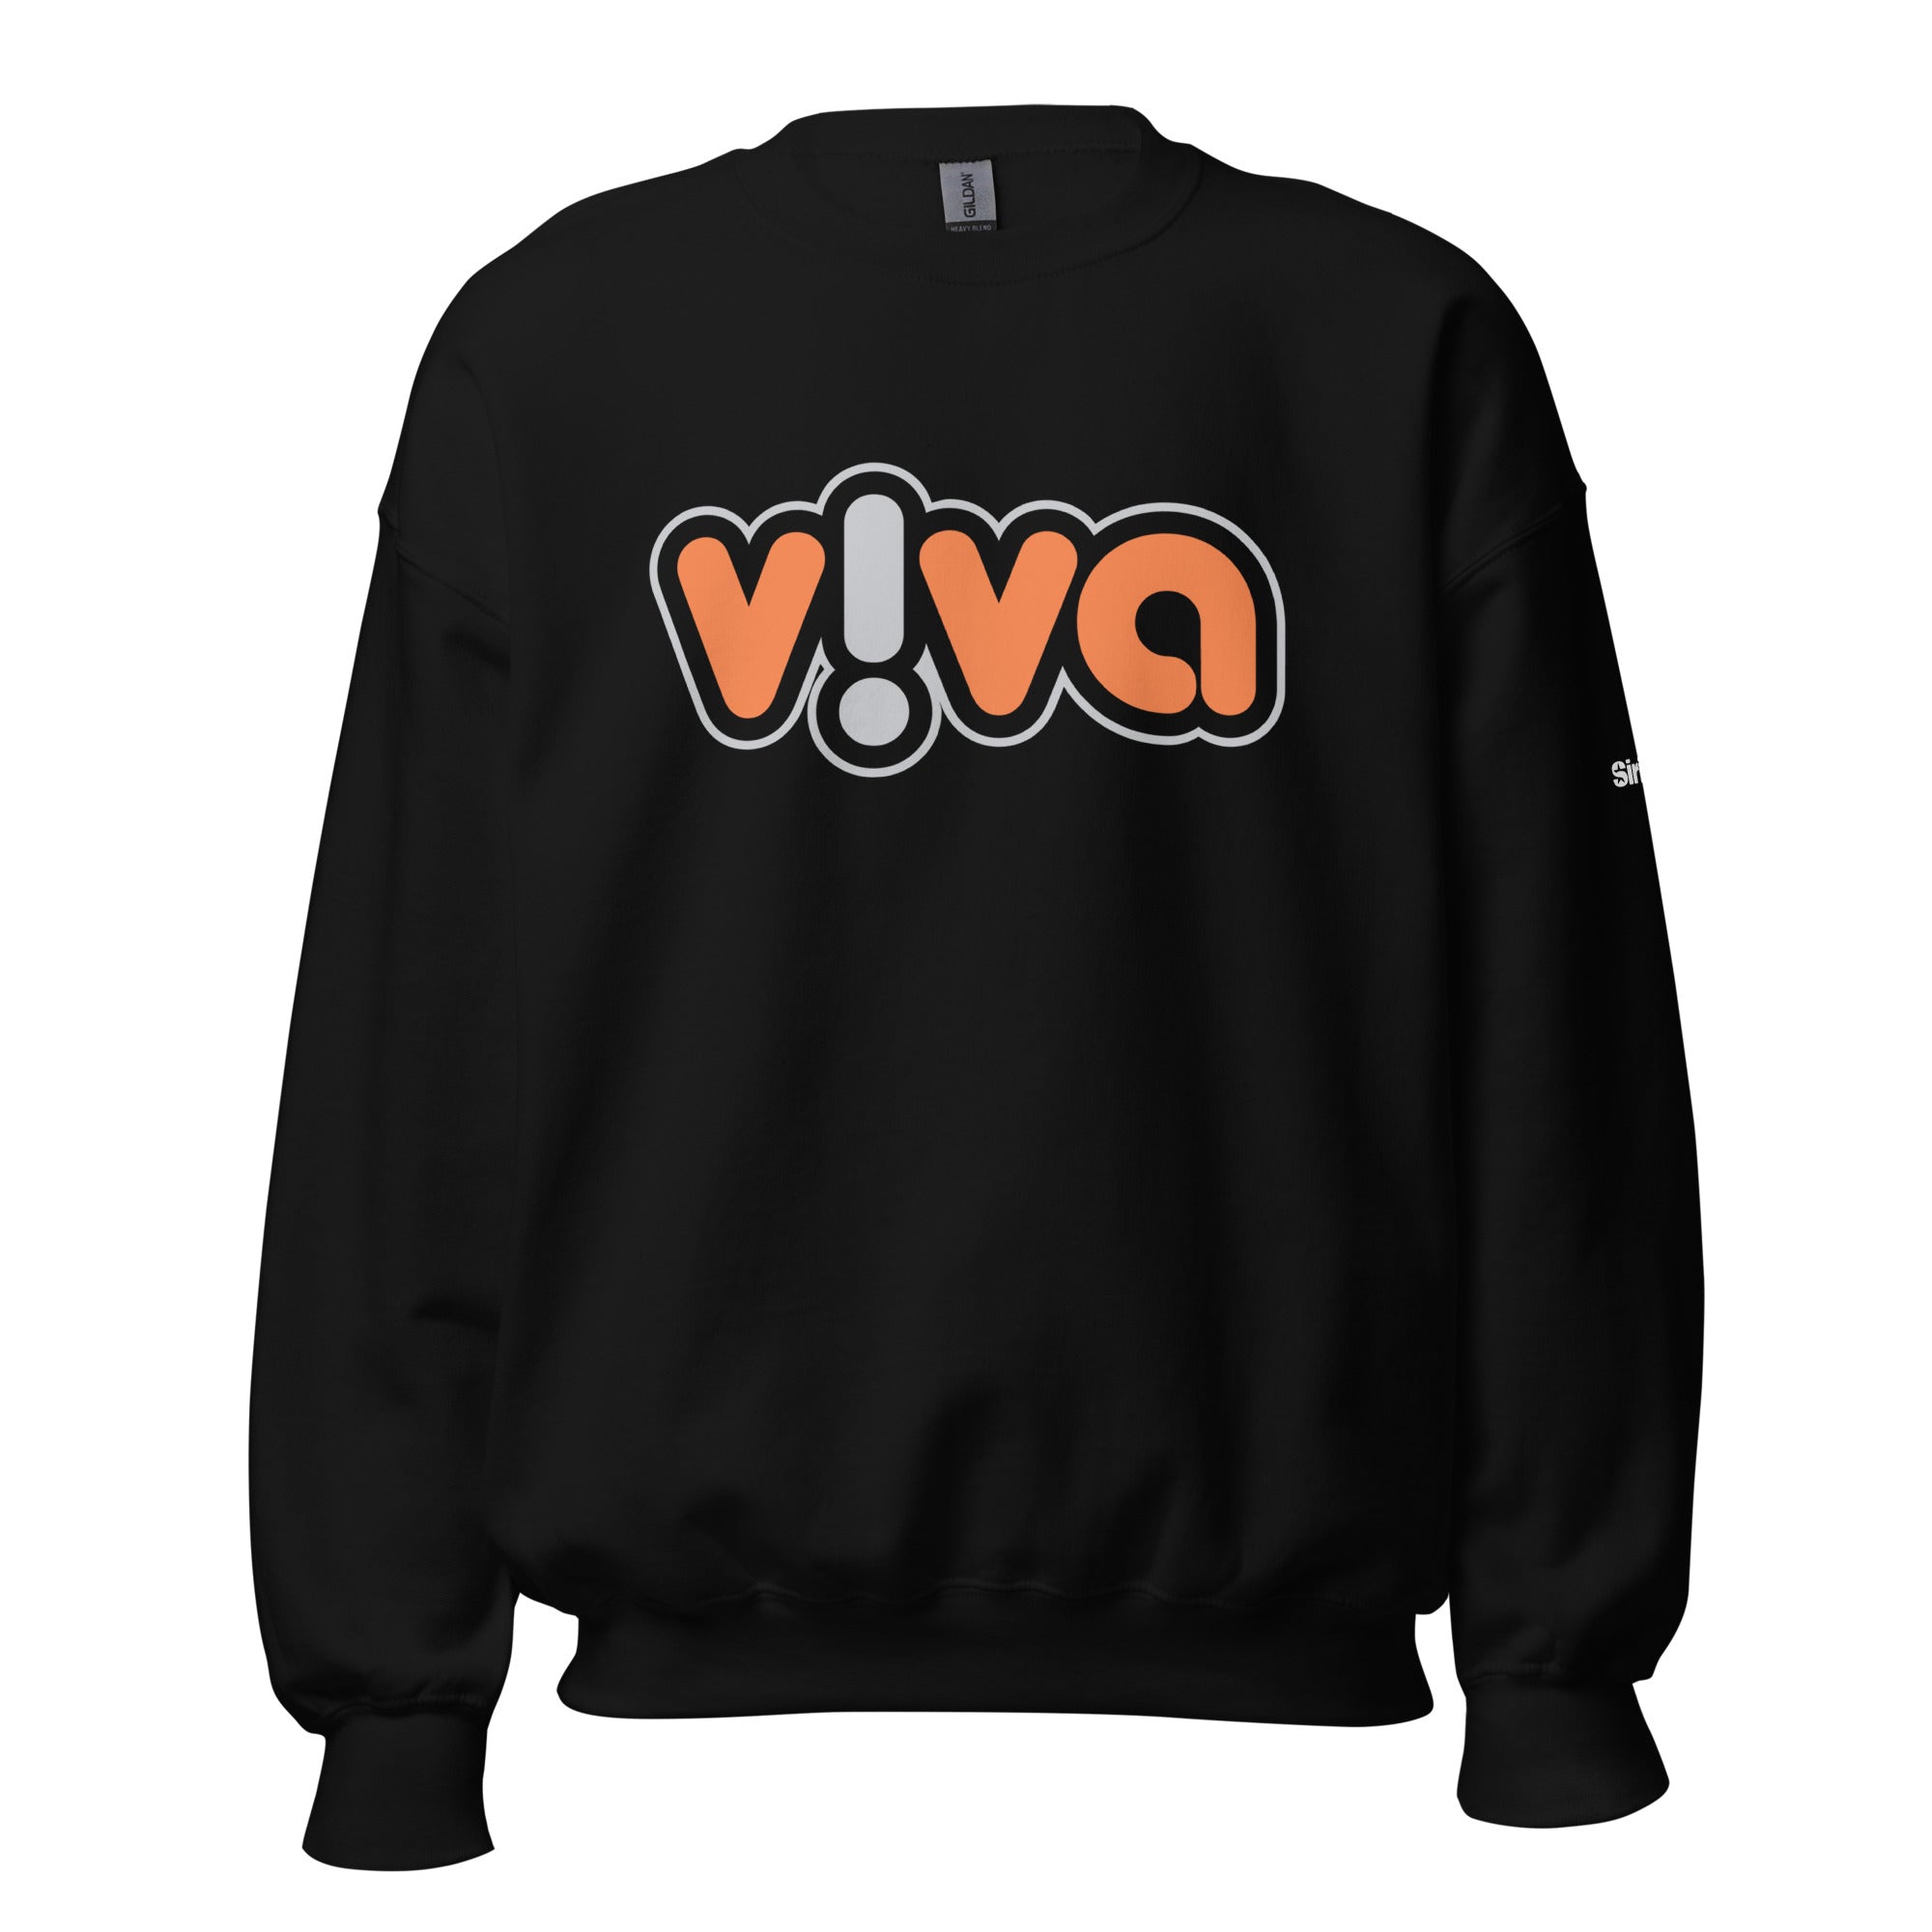 Viva: Sweatshirt (Black)